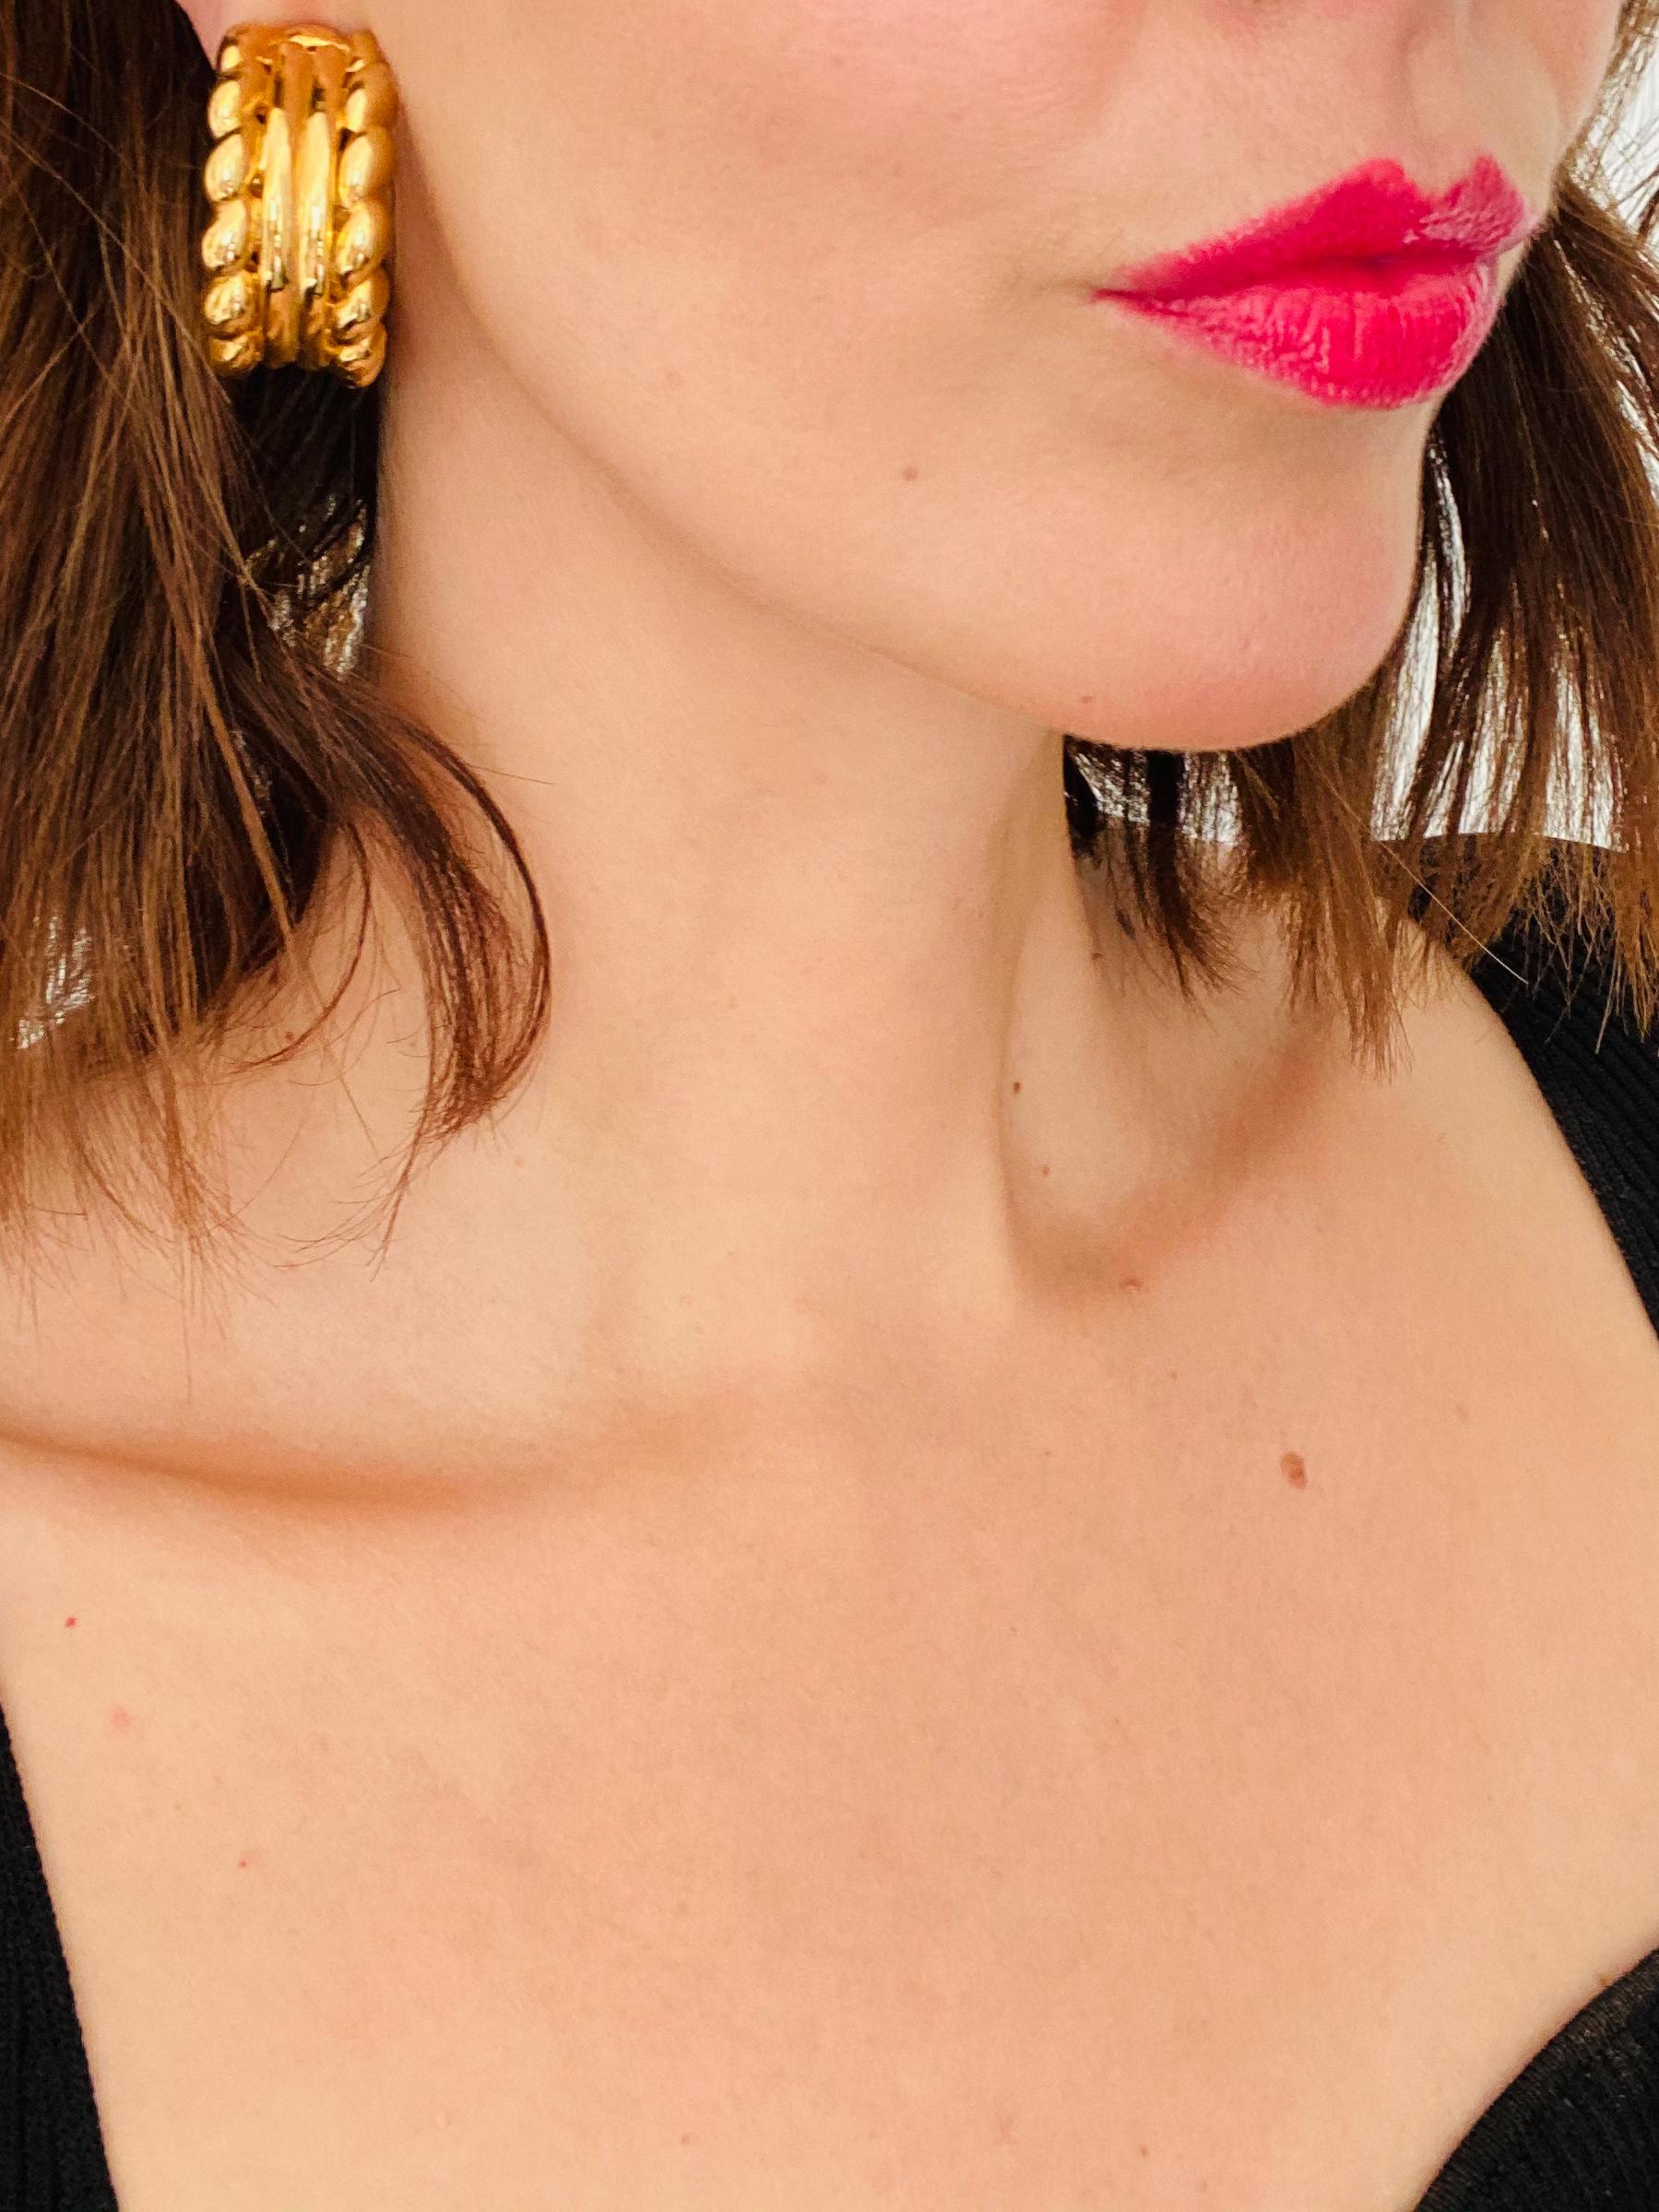 Givenchy Vintage 1980s Clip auf Ohrringe

Super coole, klobige Statement-Ring-Ohrringe aus dem Hause Givenchy. Klassisch und doch zeitgemäß 

 Einzelheiten
-Hergestellt in den 1980er Jahren
-Gearbeitet aus vergoldetem Metall
-Passendes Armband